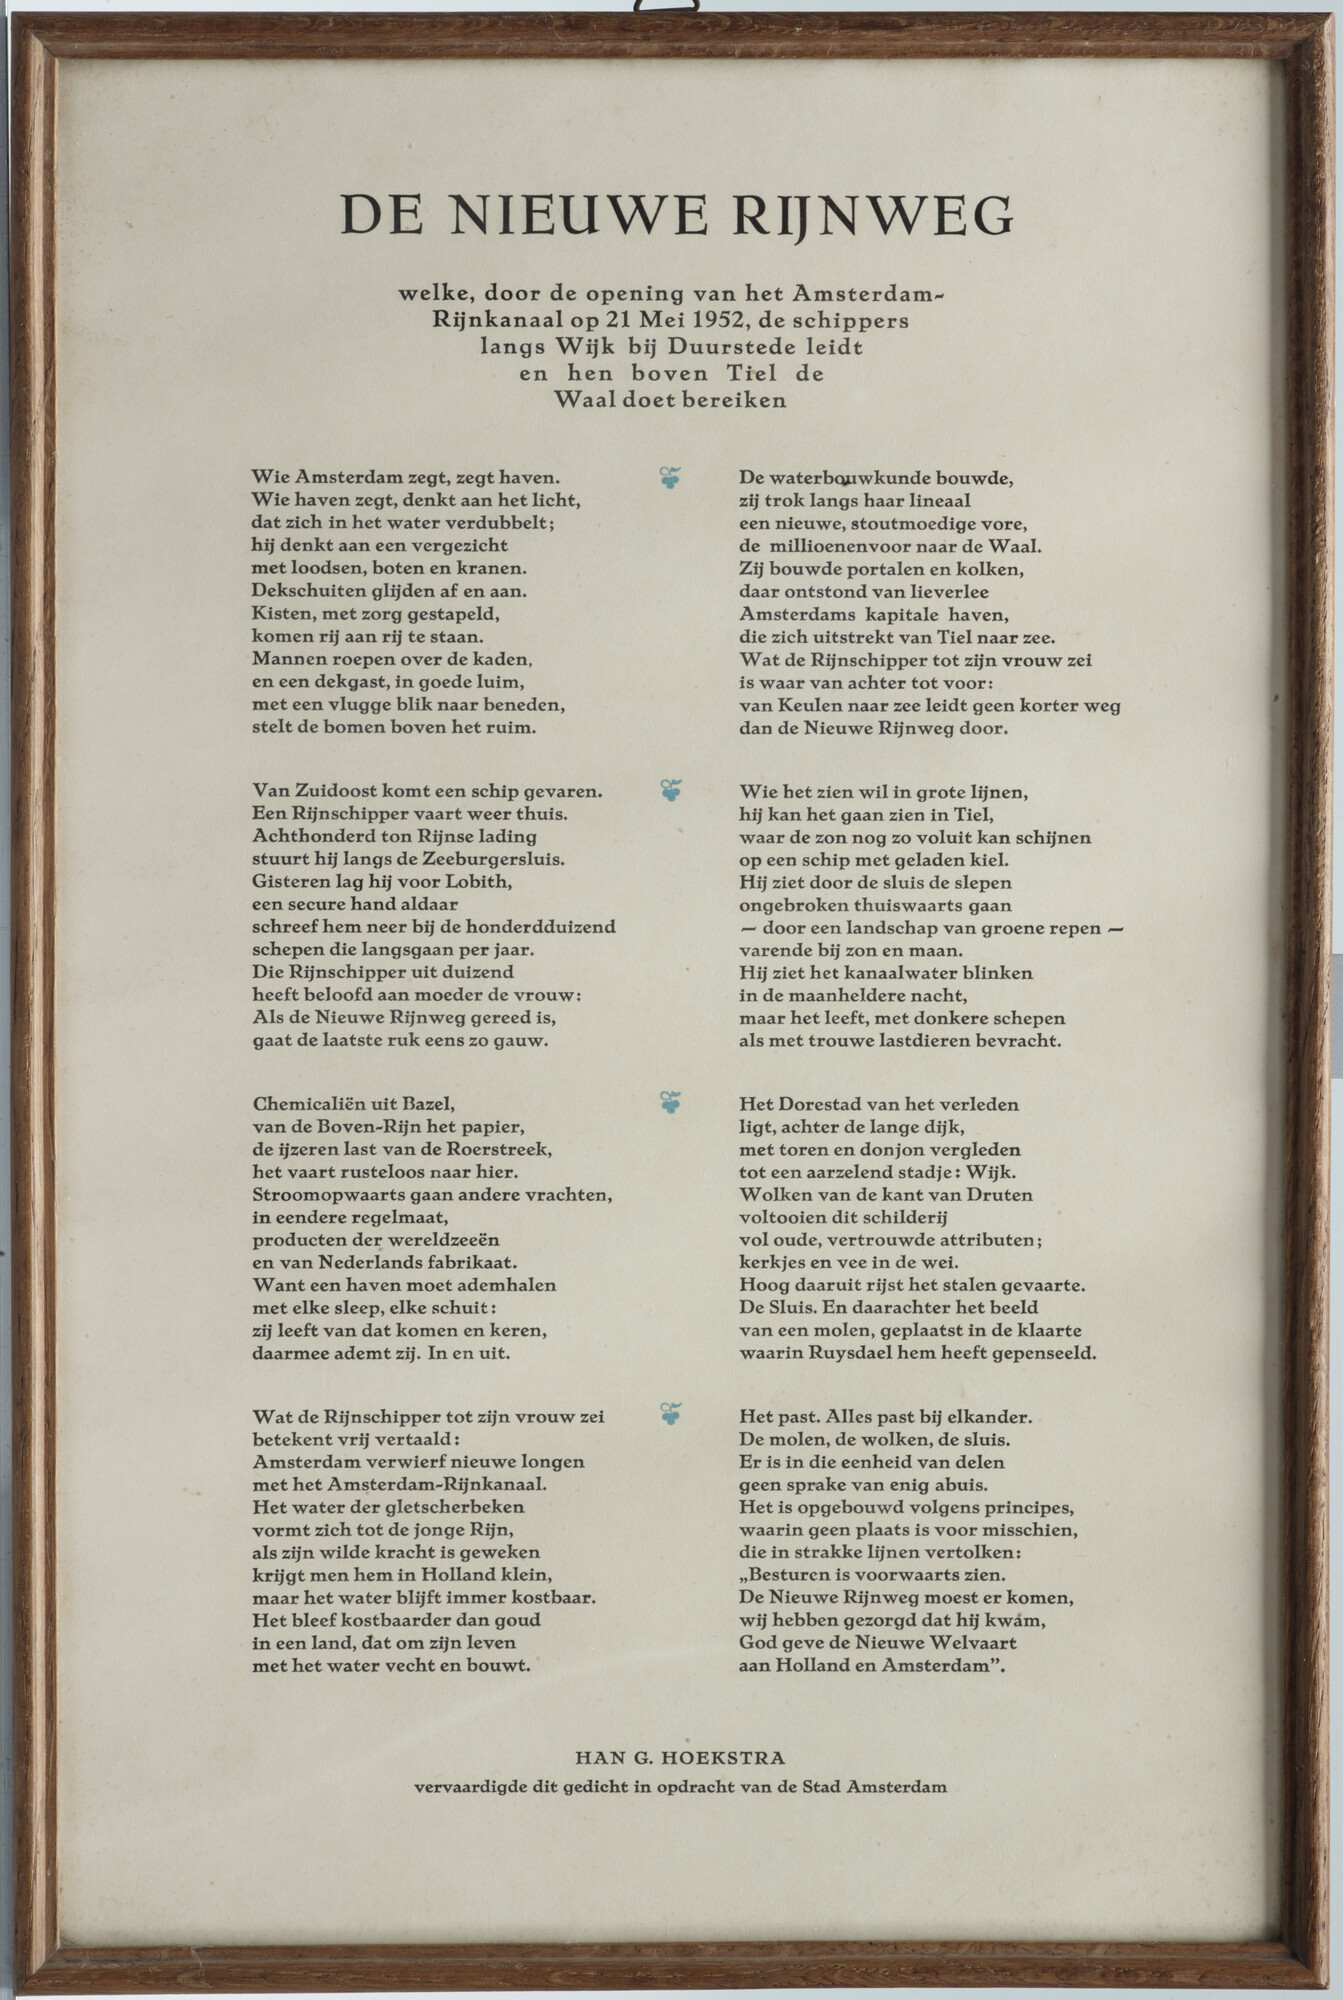 2019.0655; Gedicht met de titel "De Nieuwe Rijnweg" door Han G. Hoekstra; gedicht